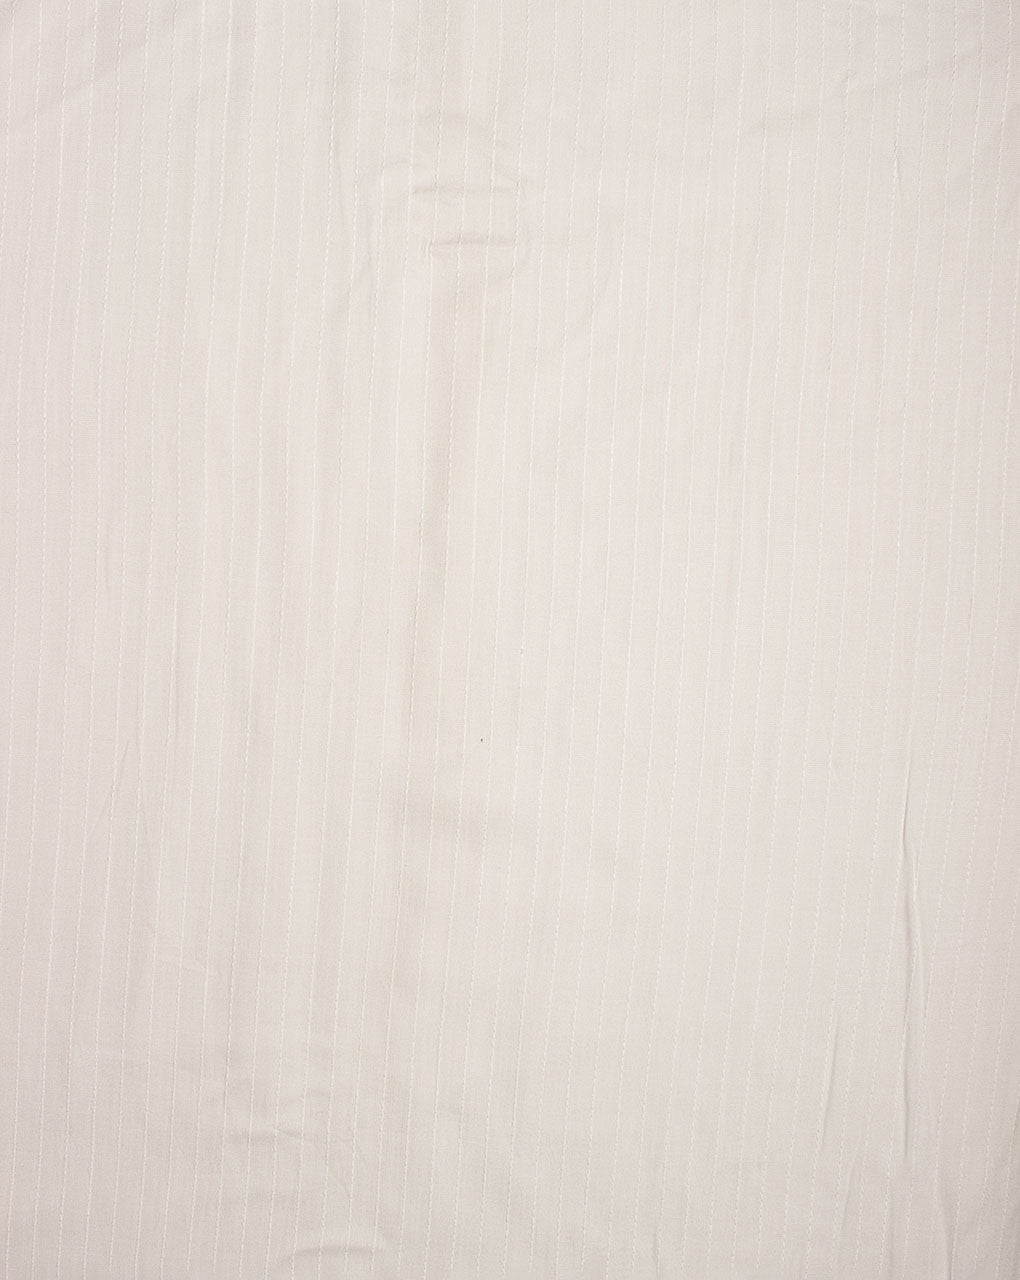 ( Pre Cut 50 CM ) White Plain Dyeable Kantha Rayon Fabric